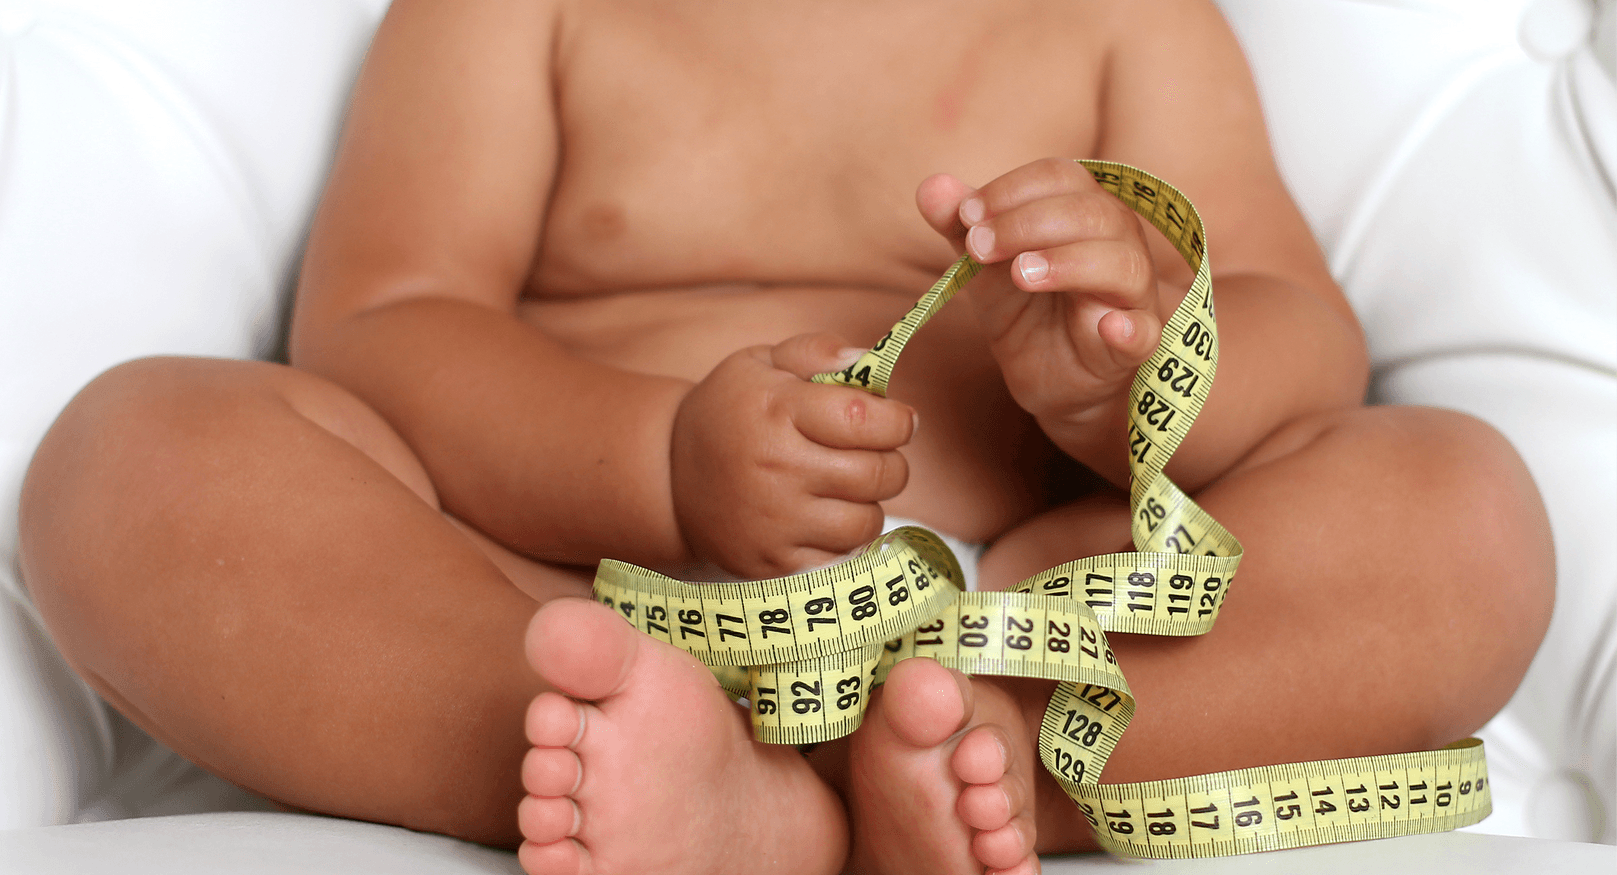 Infant BMI Checks To Prevent Obesity